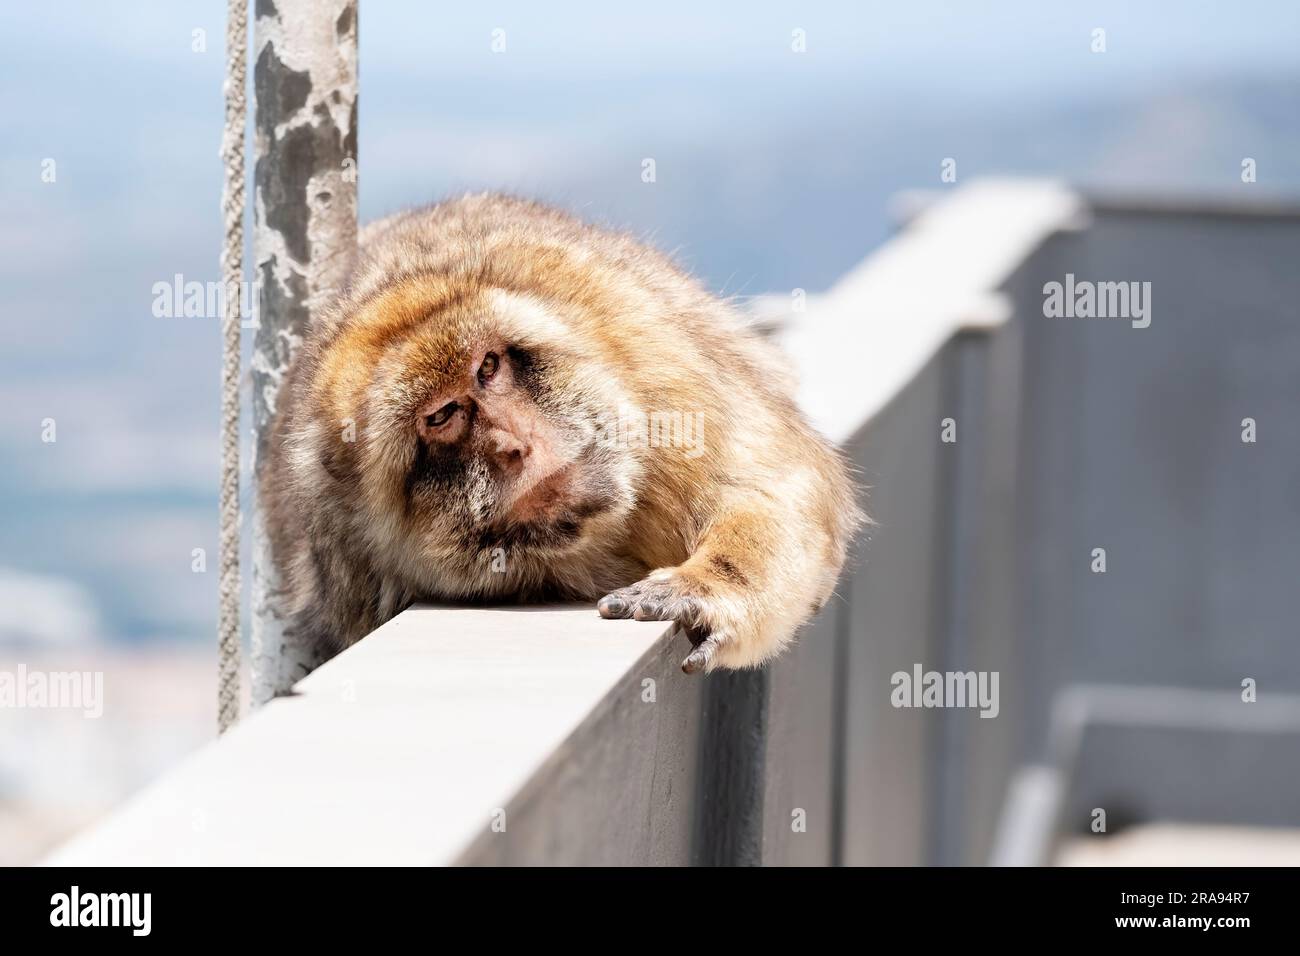 Un mono descansando en una cornisa en la cima de la roca de Gibraltar. Los monos son simios de Berbería y han colonizado la zona rocosa Foto de stock